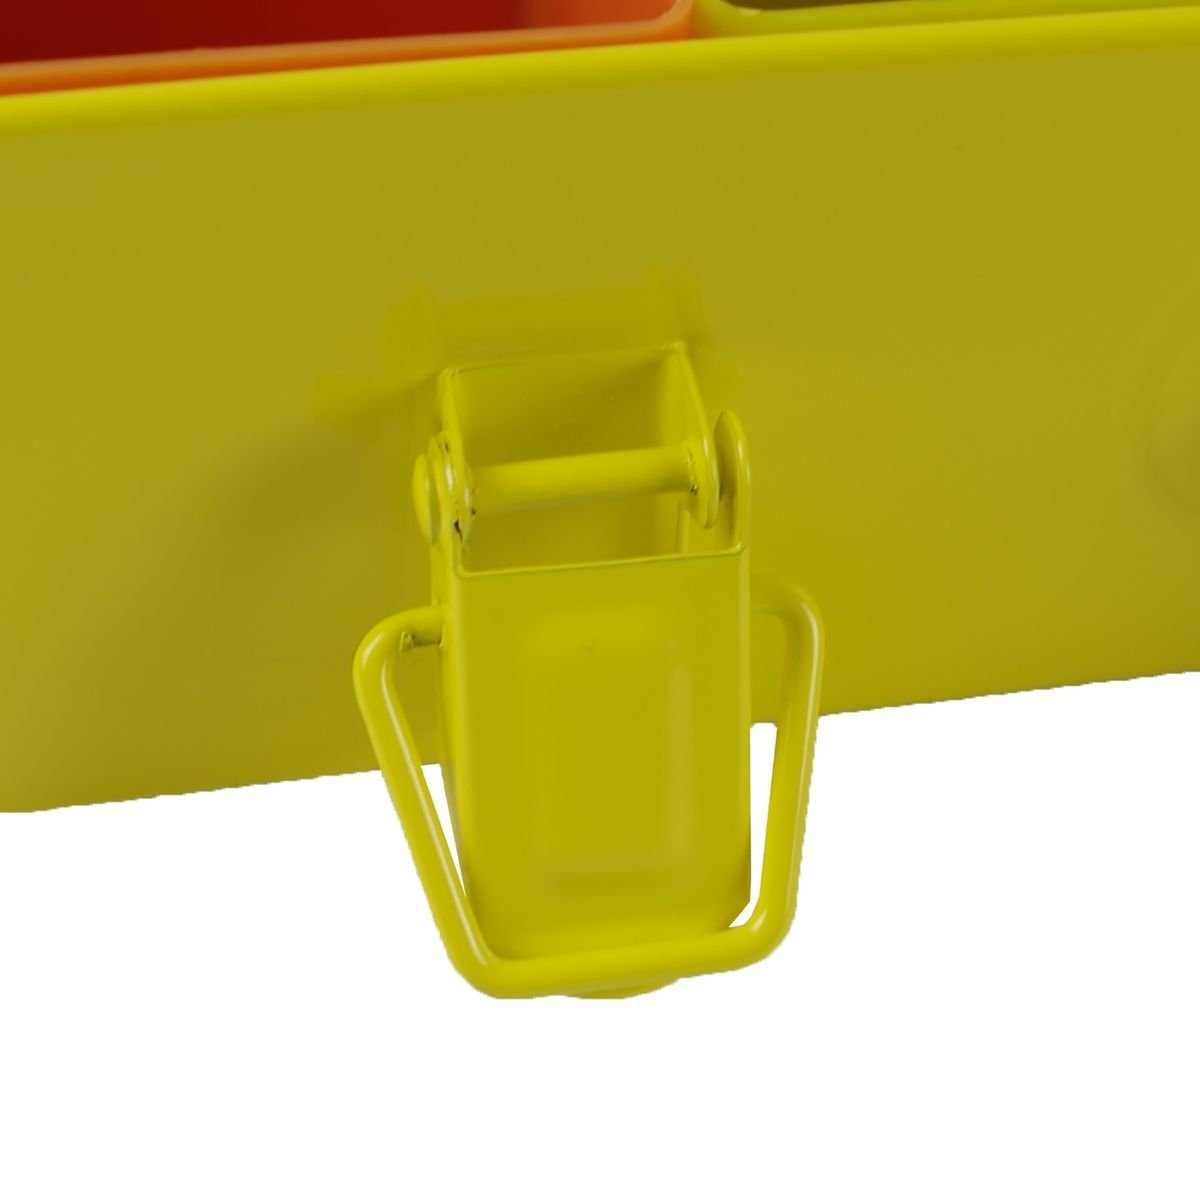 Starke Werkzeugbox aus Sortimentskasten 28x39x7cm Sortimentskoffer Metall gelber 14Fächer